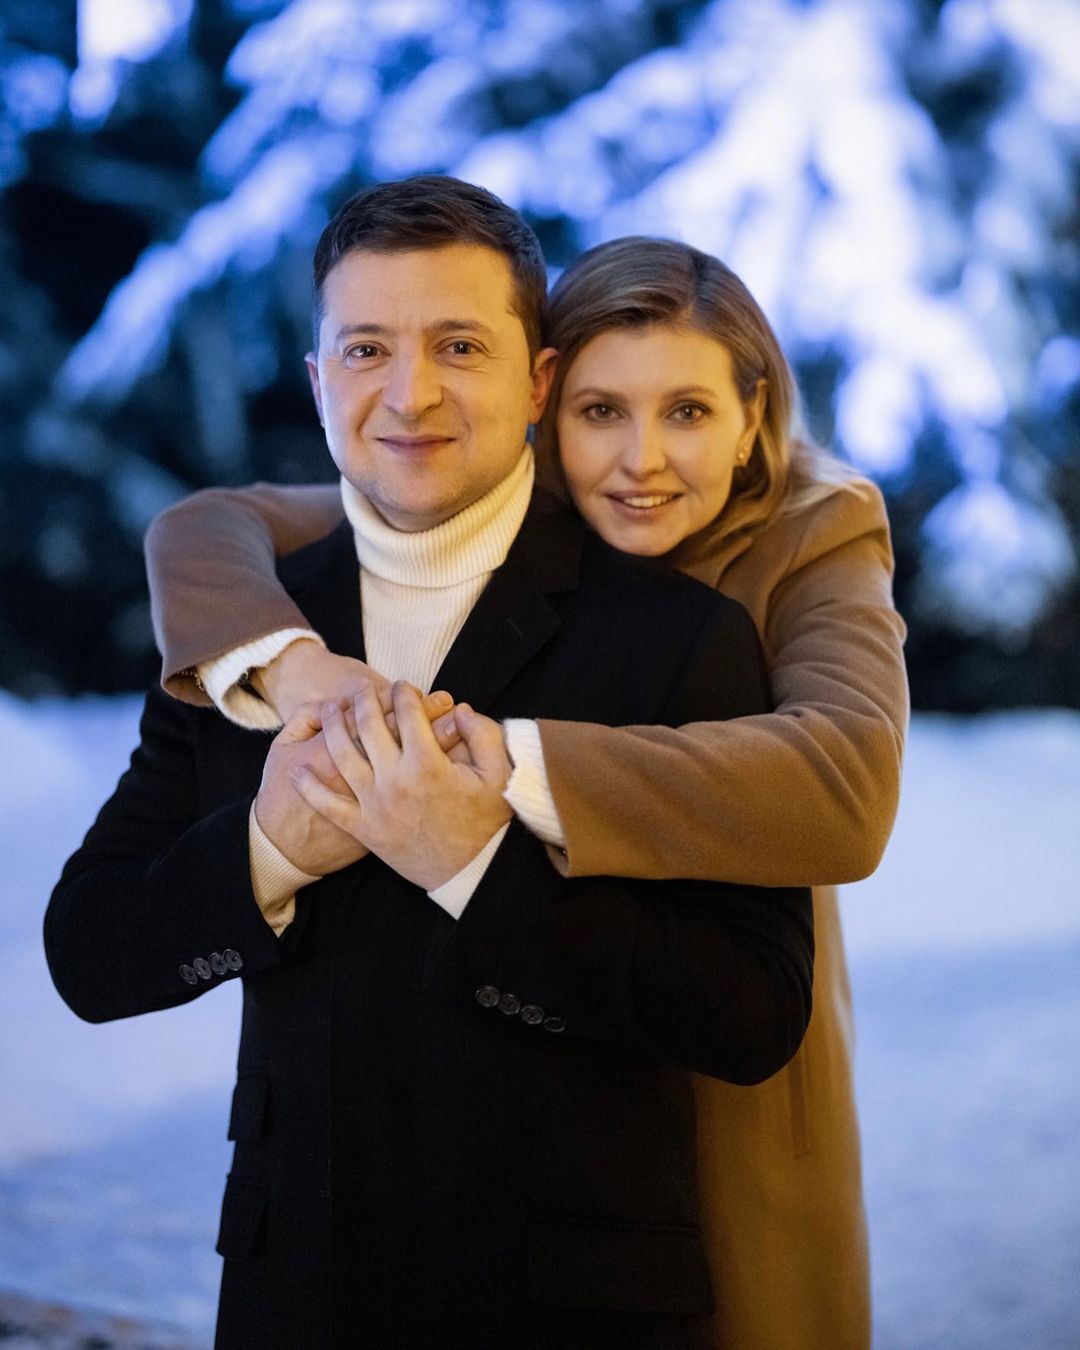 Елена Зеленская трогательно поздравила мужа с днем рождения: смотри на меня, я всегда чувствую твою любовь!